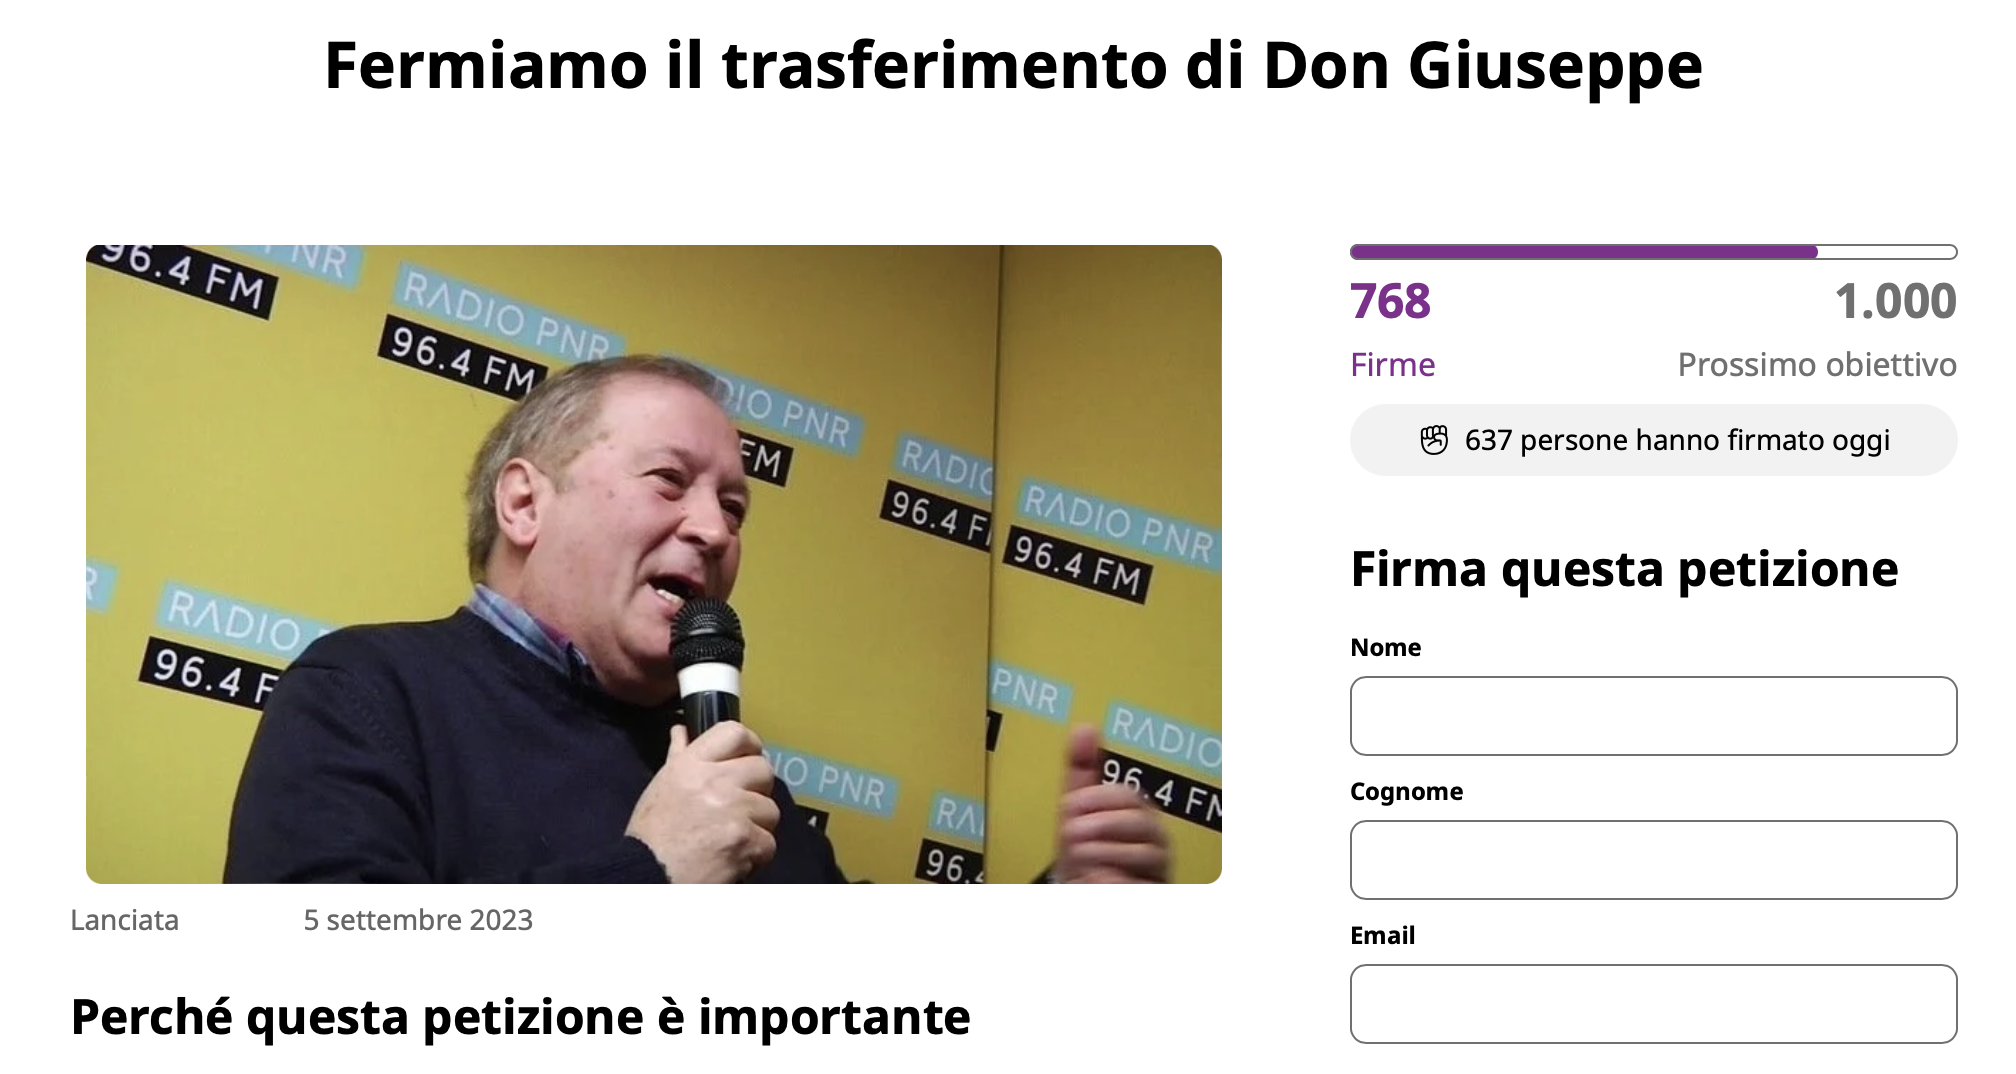 Una petizione per bloccare il trasferimento di Don Giuseppe